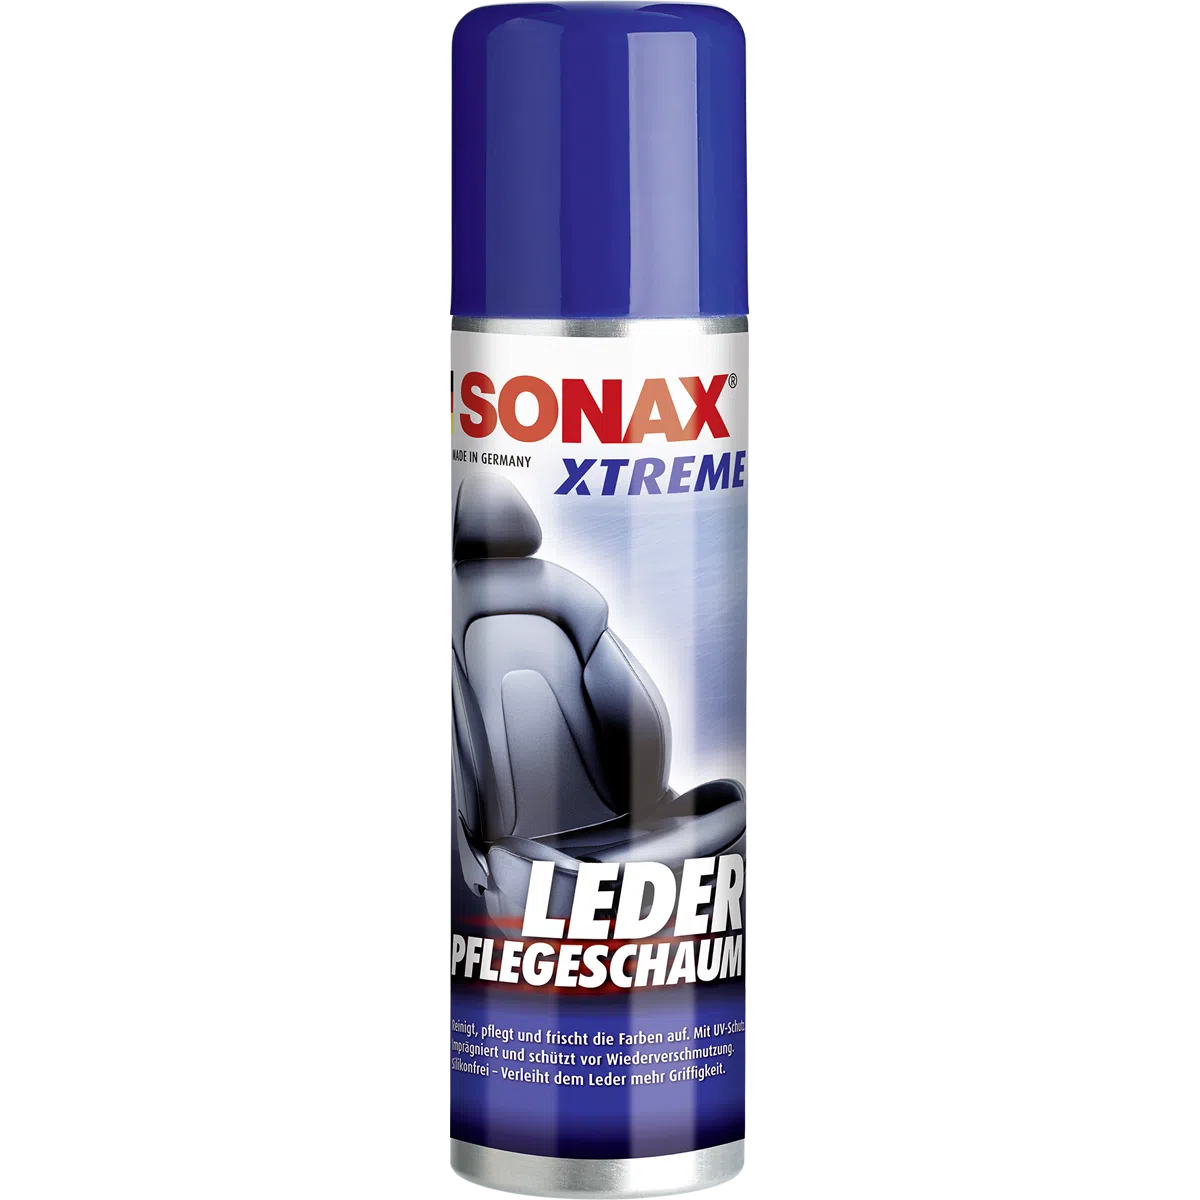 Sonax Xtreme Lederpflegeschaum 250 Milliliter